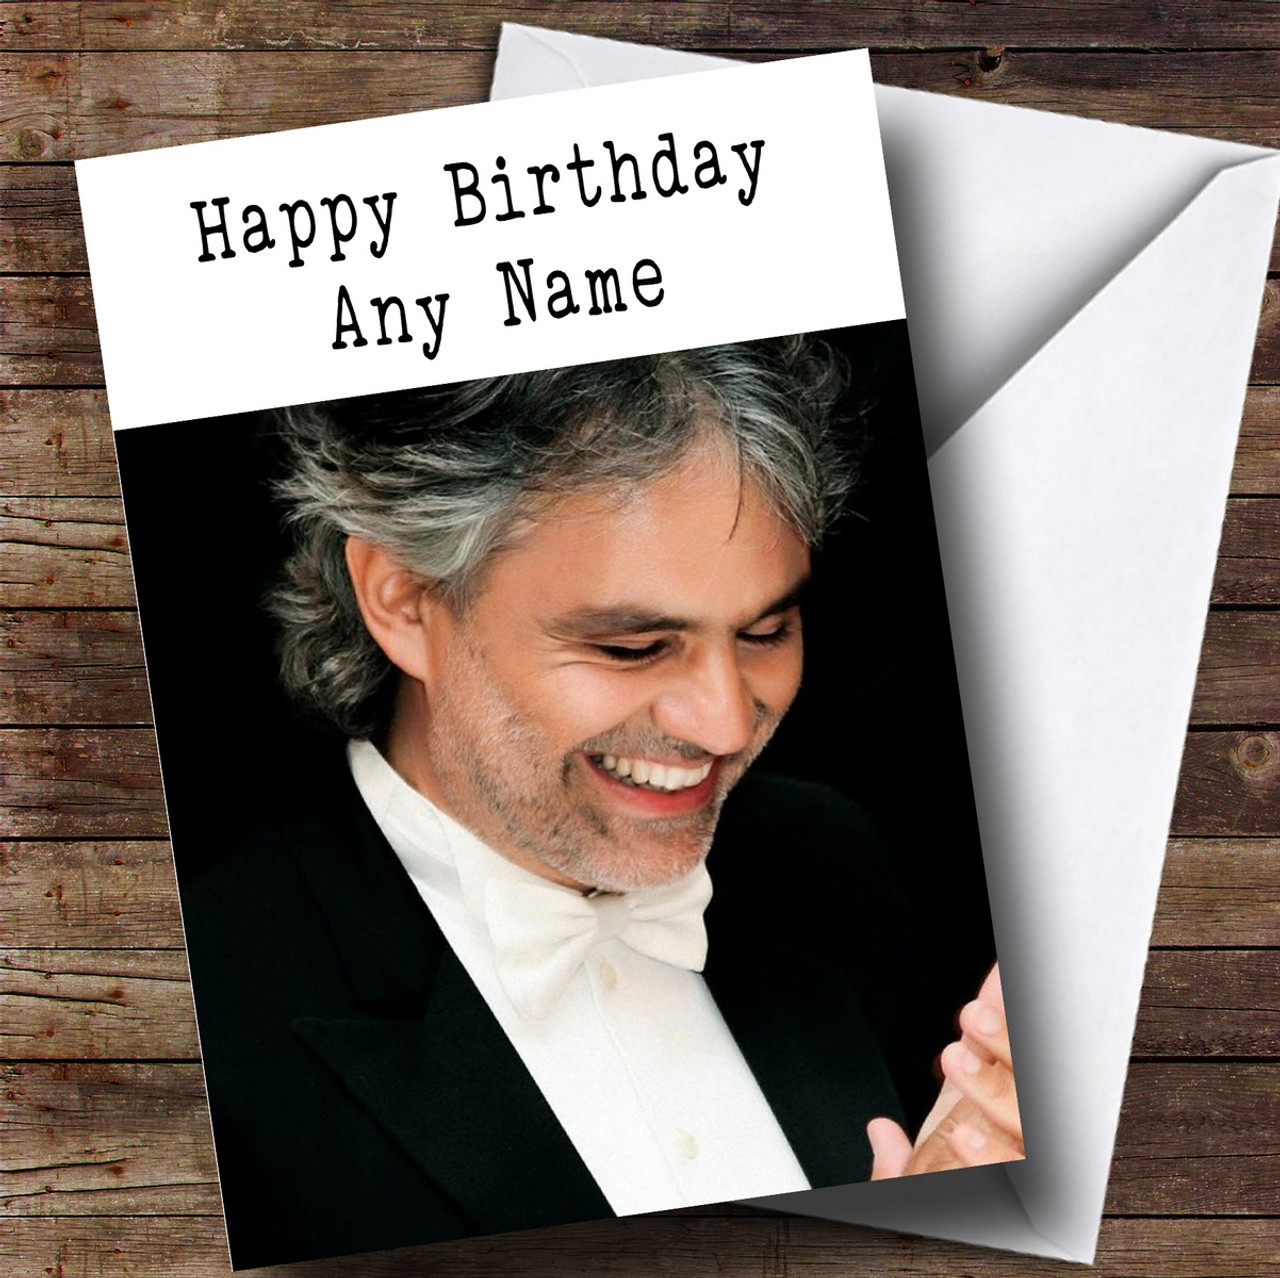 Happy Birthday Andrea Bocelli! 